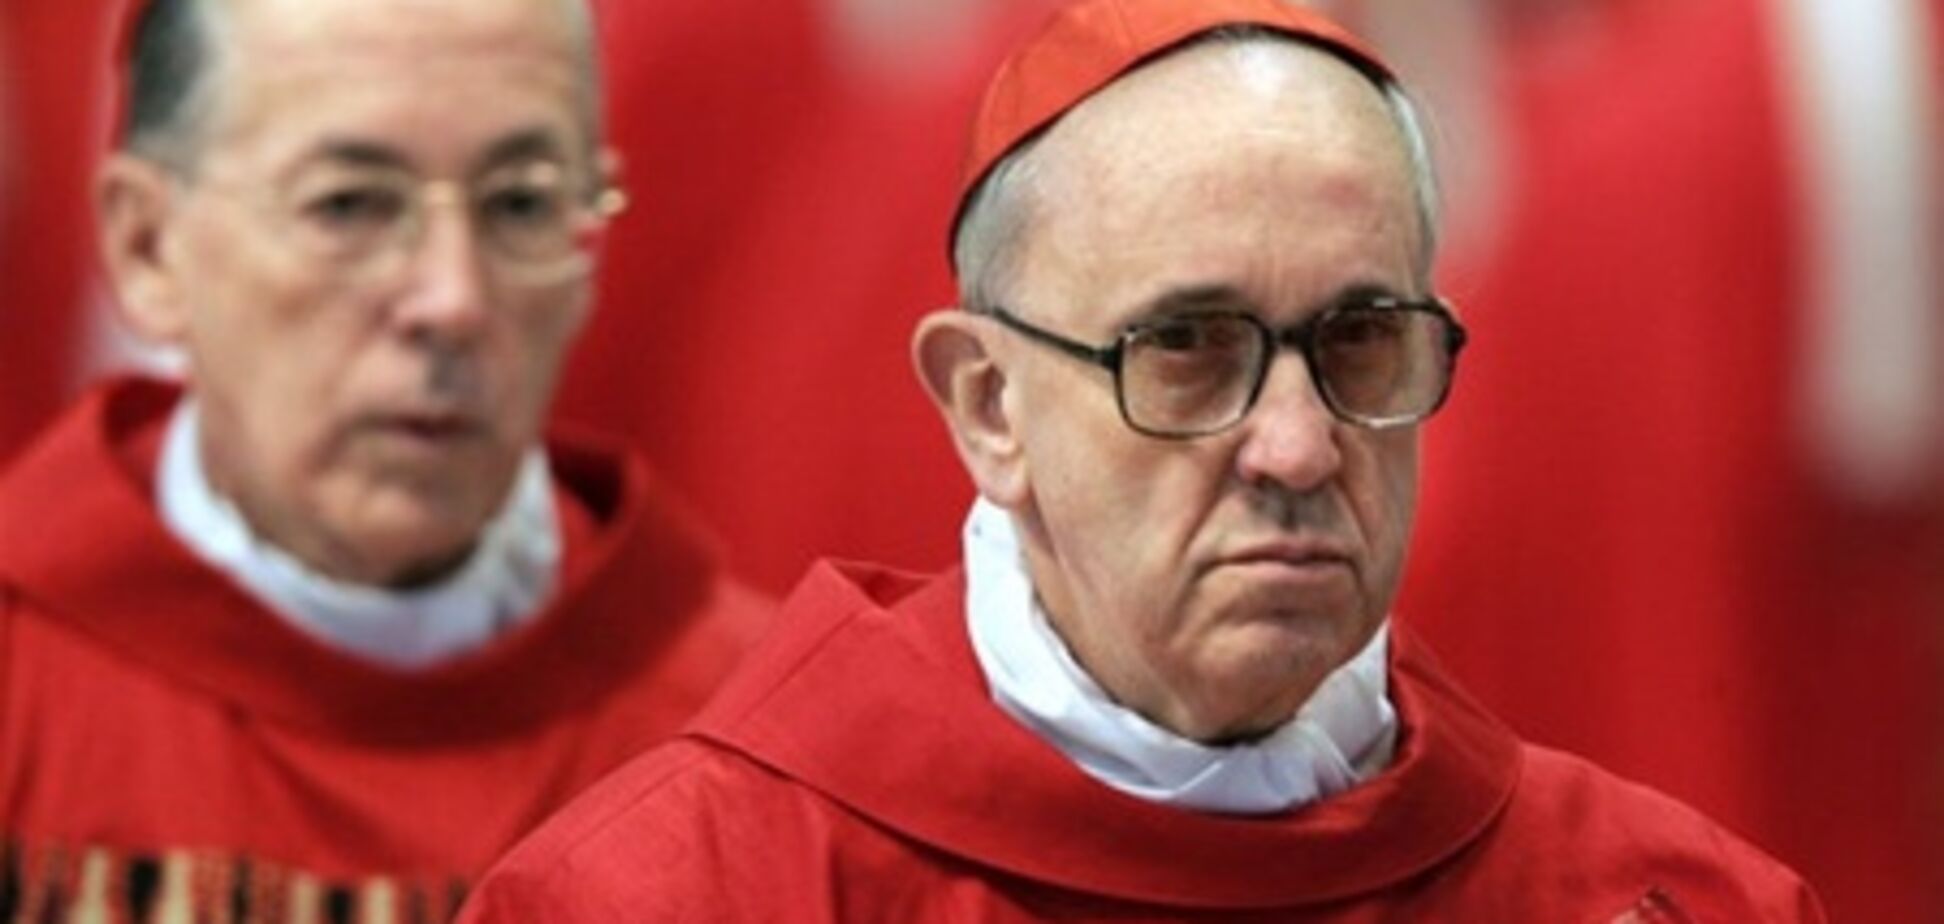 СМИ: новый Папа ярый противник абортов и однополых браков